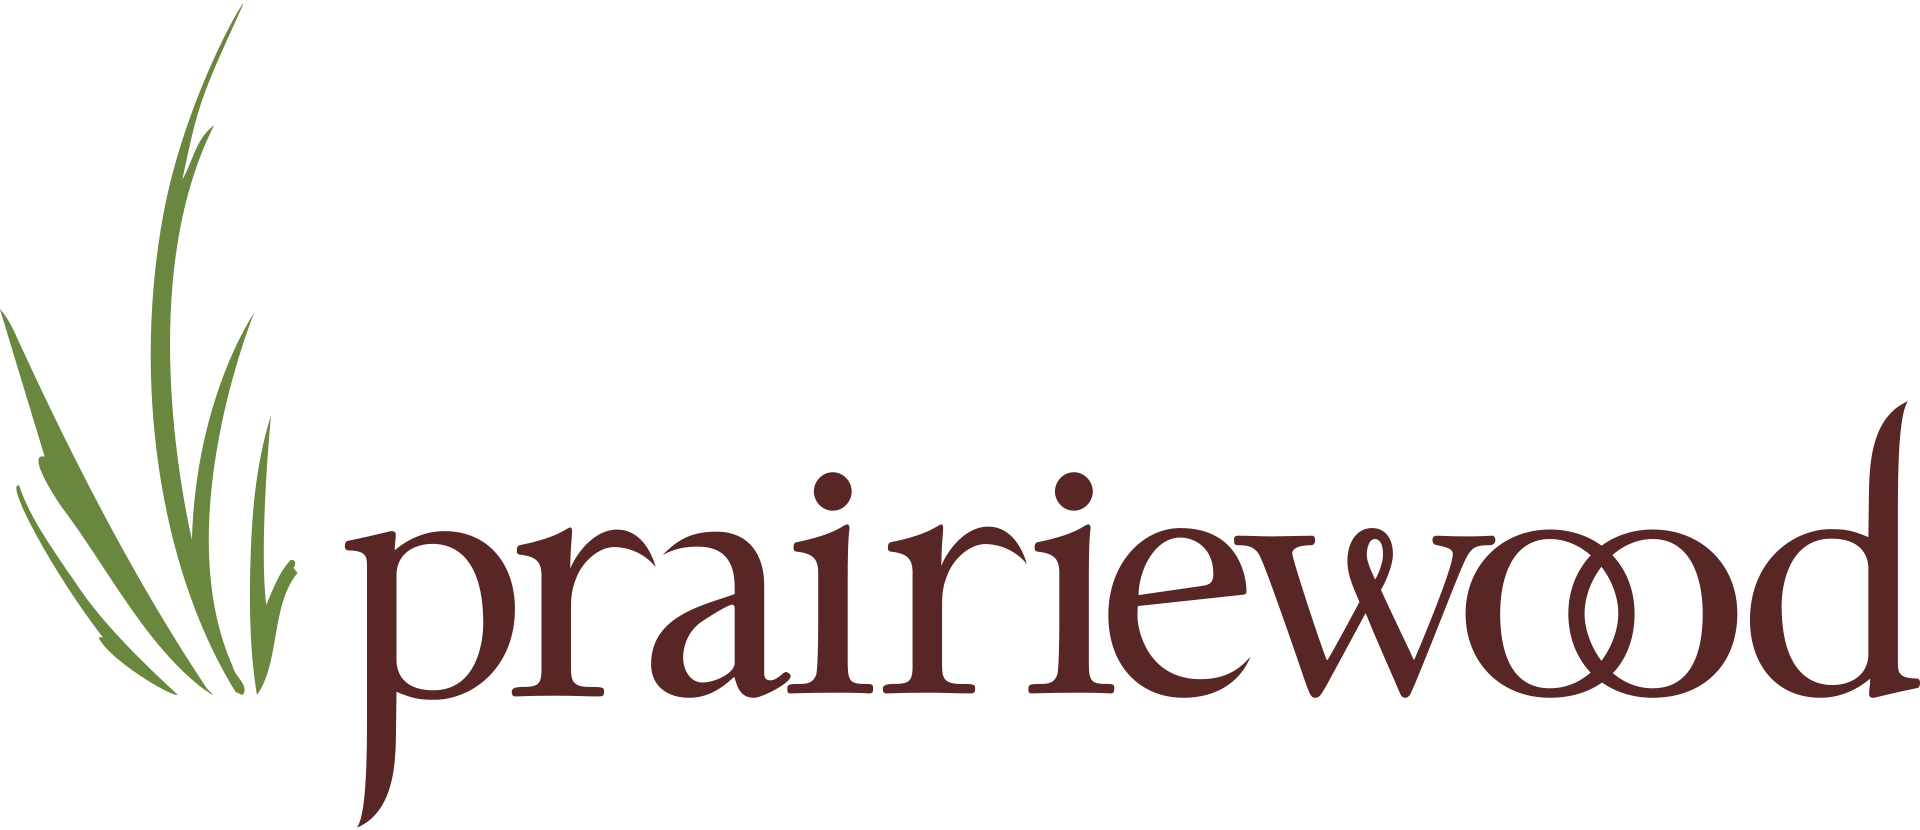 Prairiewood Logo